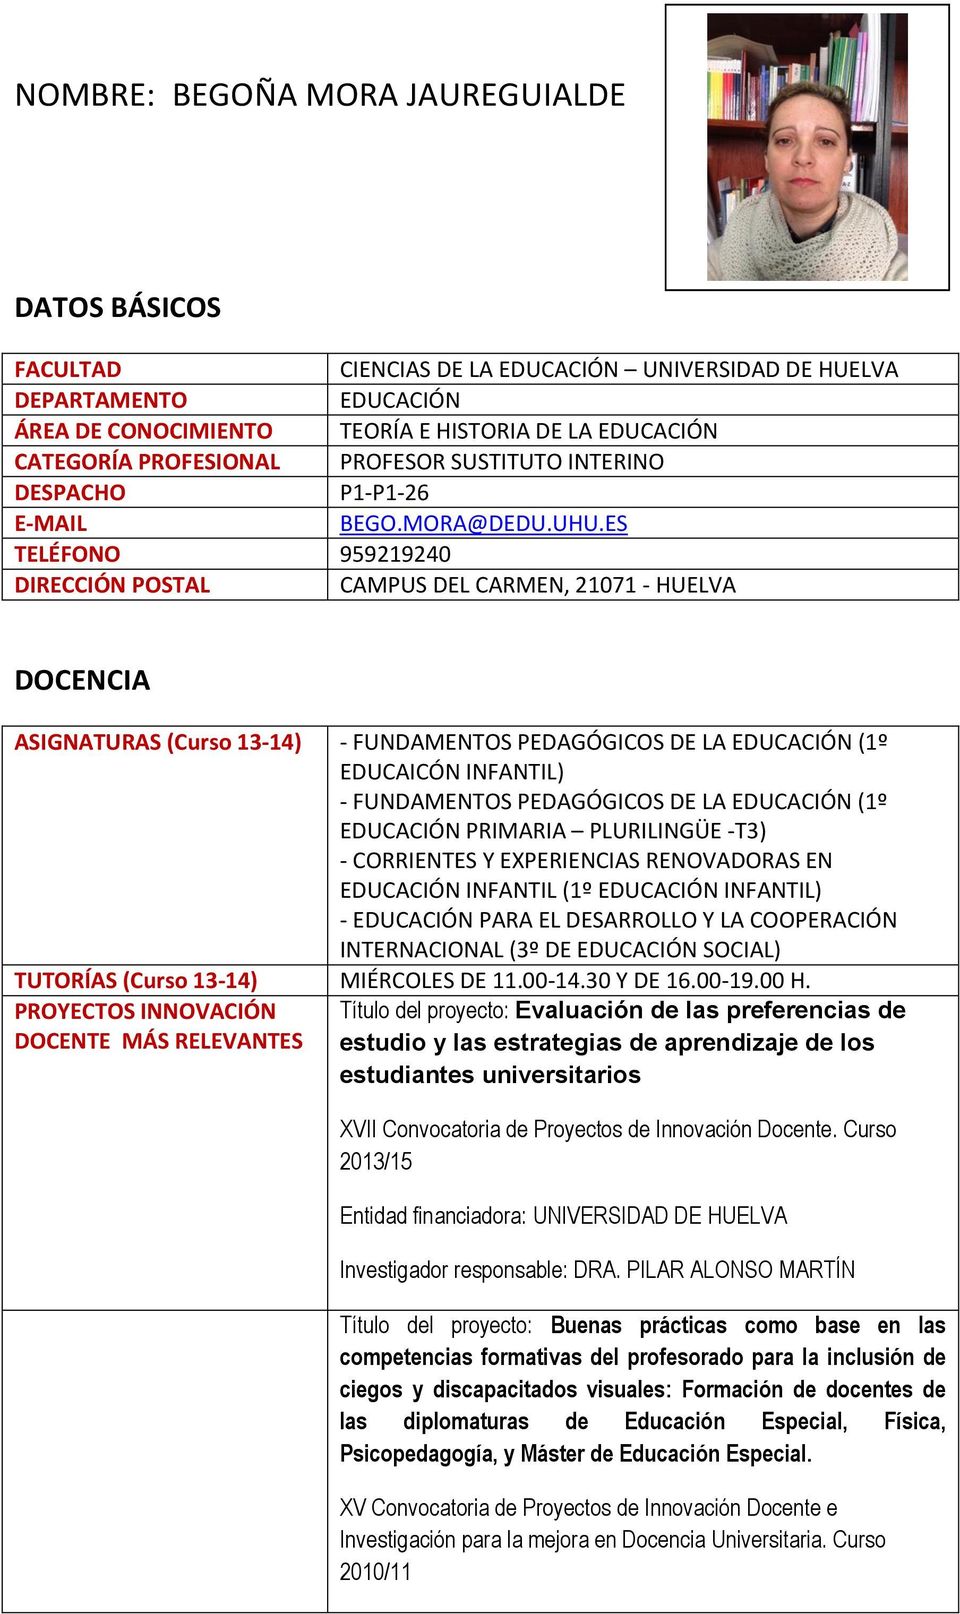 ES TELÉFONO 959219240 DIRECCIÓN POSTAL CAMPUS DEL CARMEN, 21071 - HUELVA DOCENCIA ASIGNATURAS (Curso 13-14) - FUNDAMENTOS PEDAGÓGICOS DE LA EDUCACIÓN (1º EDUCAICÓN INFANTIL) - FUNDAMENTOS PEDAGÓGICOS